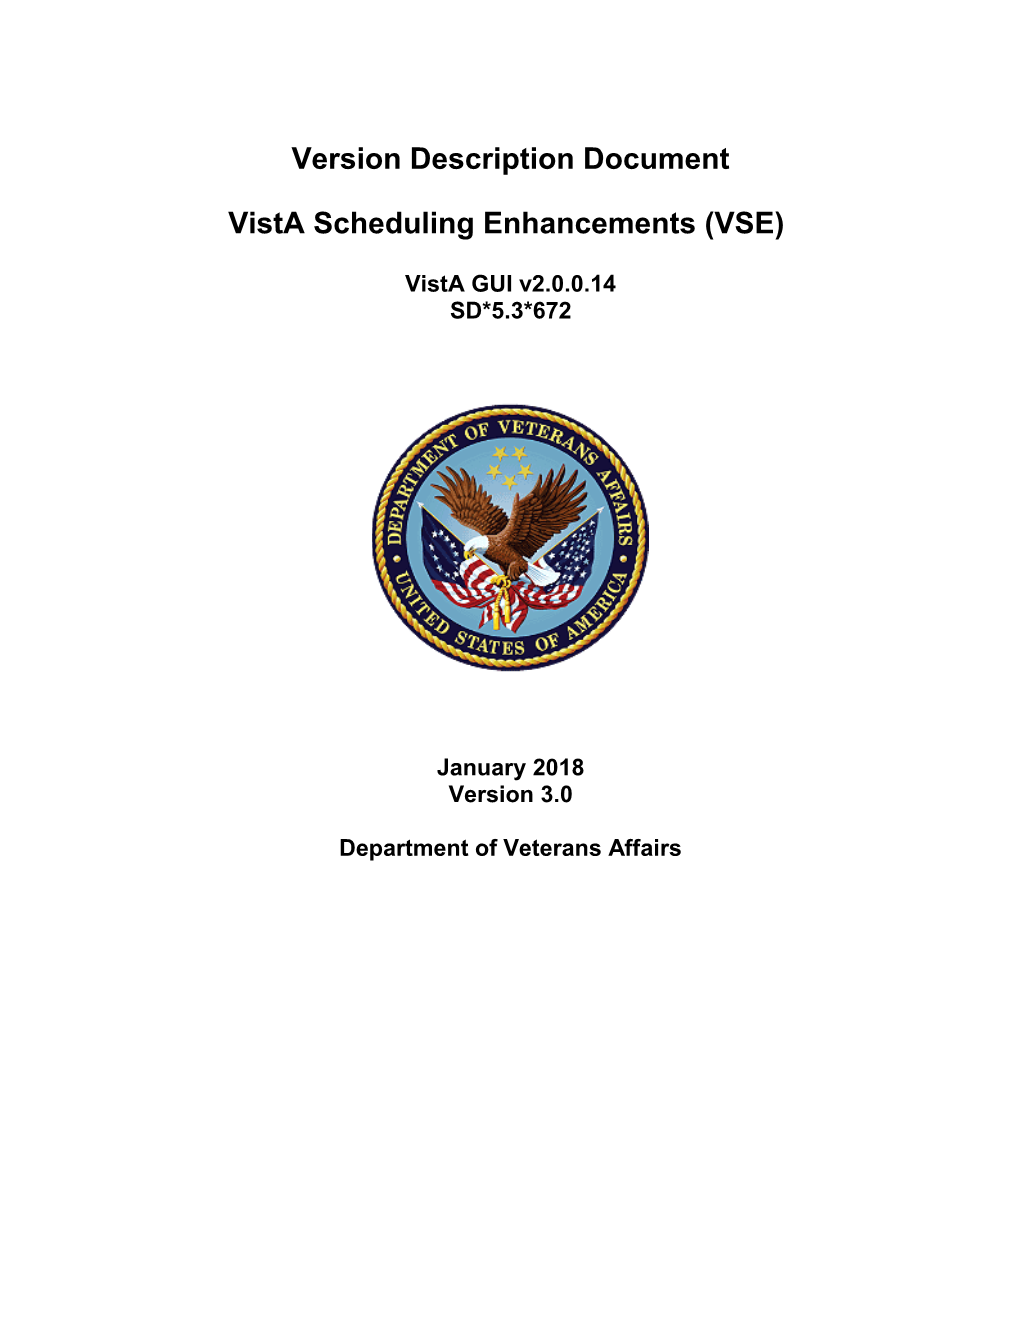 Vista Scheduling Enhancements (VSE)